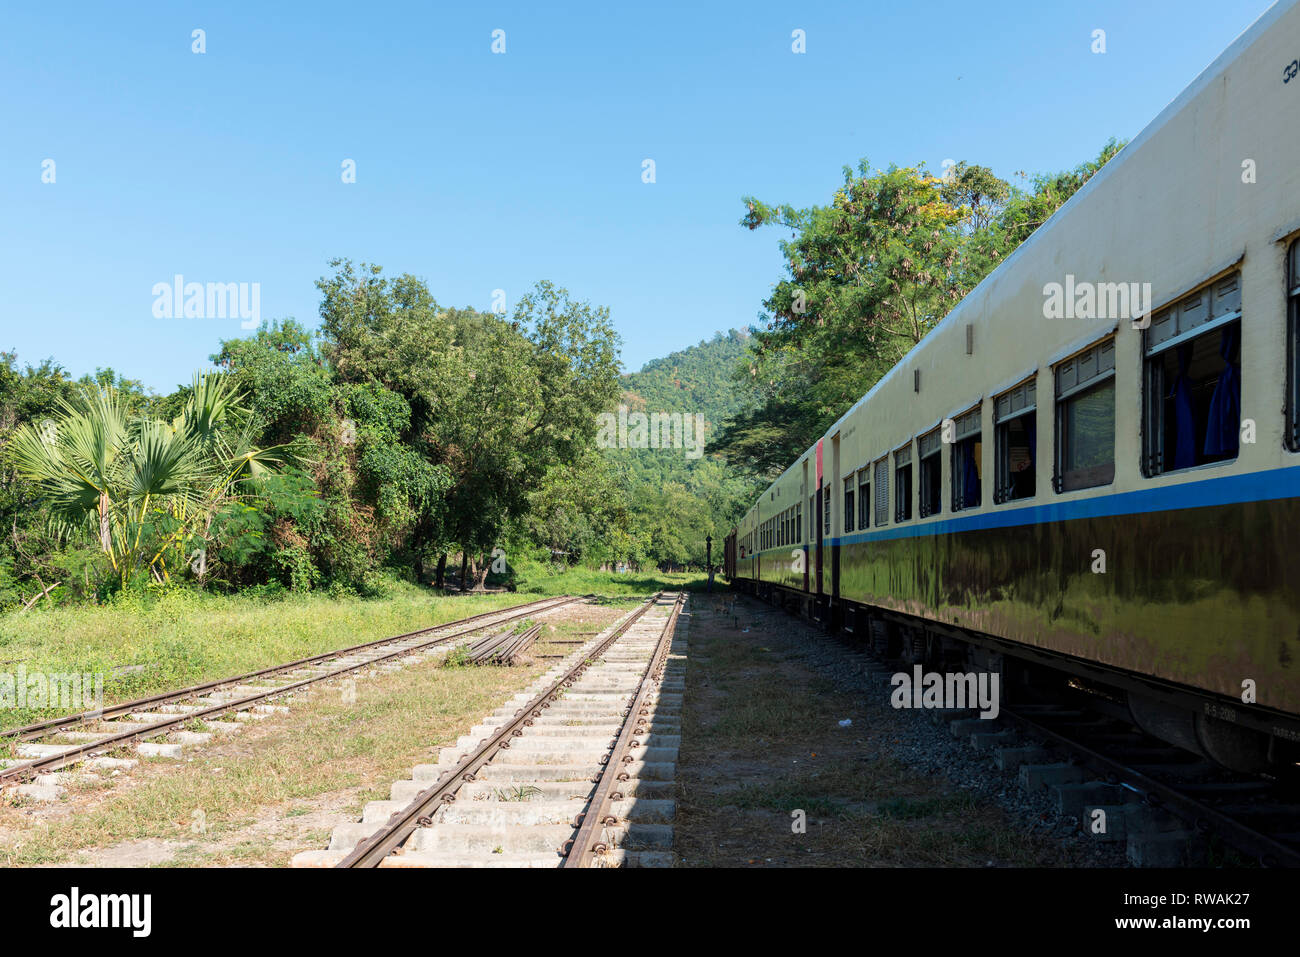 KALAW, MYANMAR - 23 novembre, 2018 Photo : horizontale de vieux rails et train situé dans les montagnes près de Kalaw, Myanmar Banque D'Images